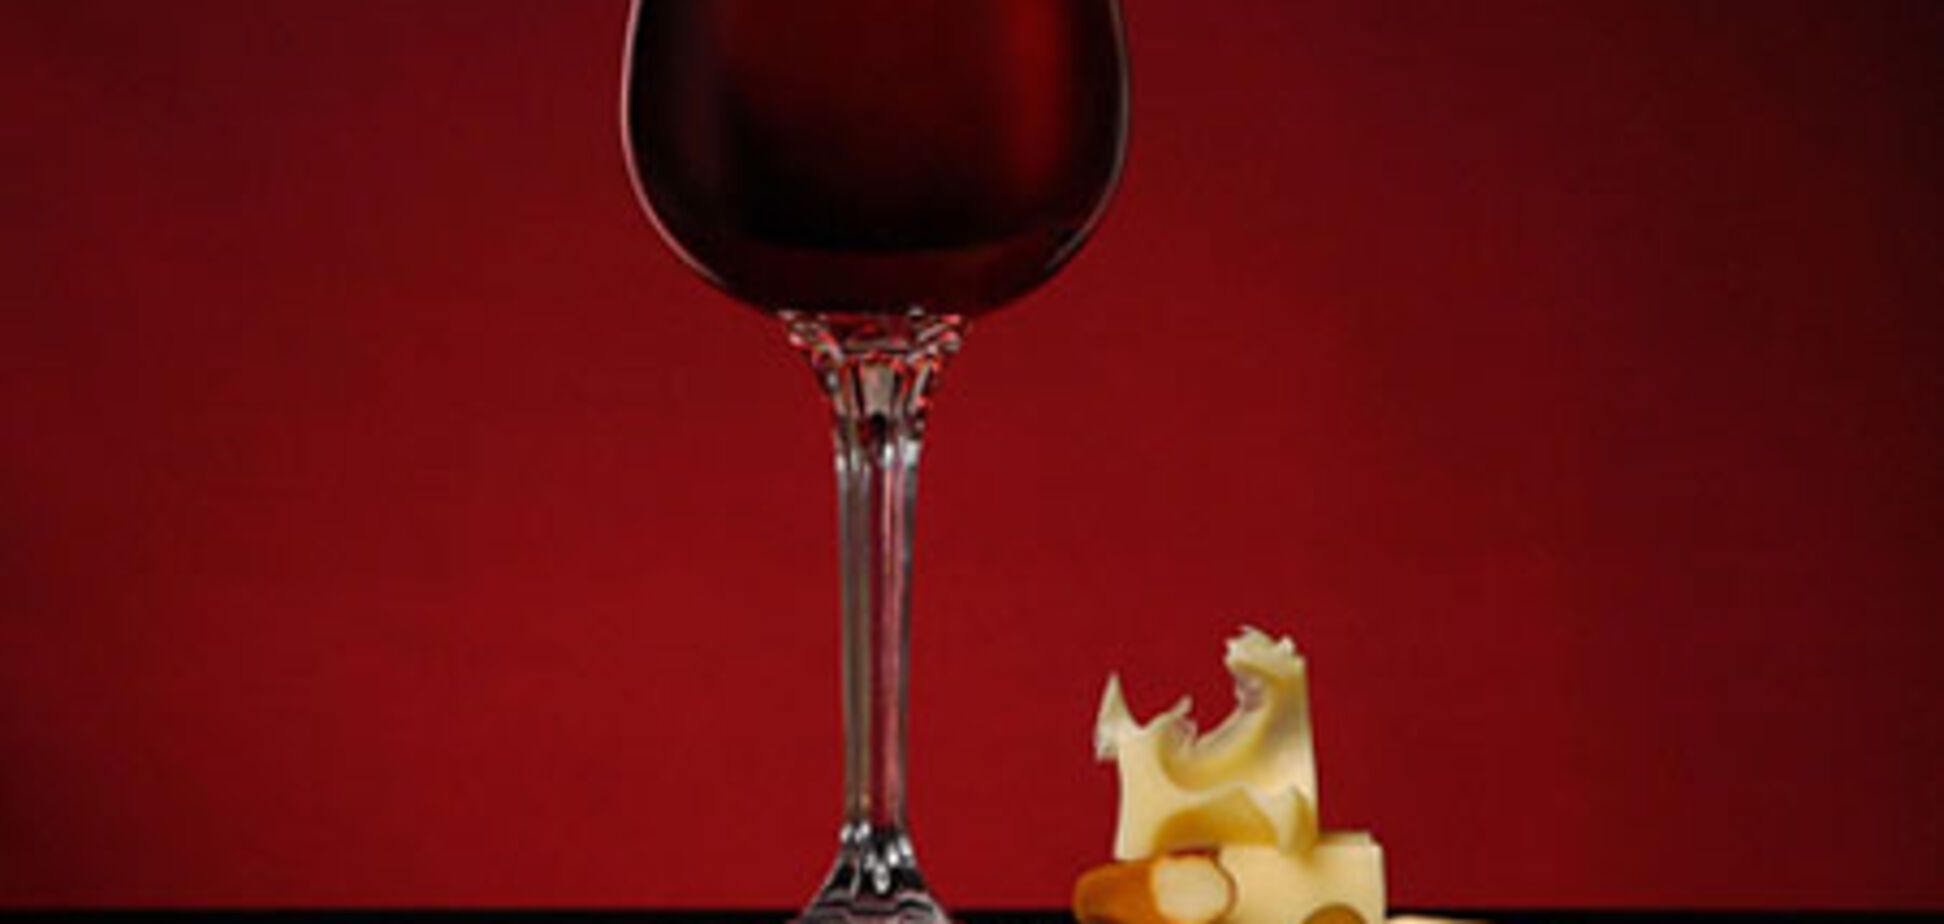 Сочетание сыров с винами